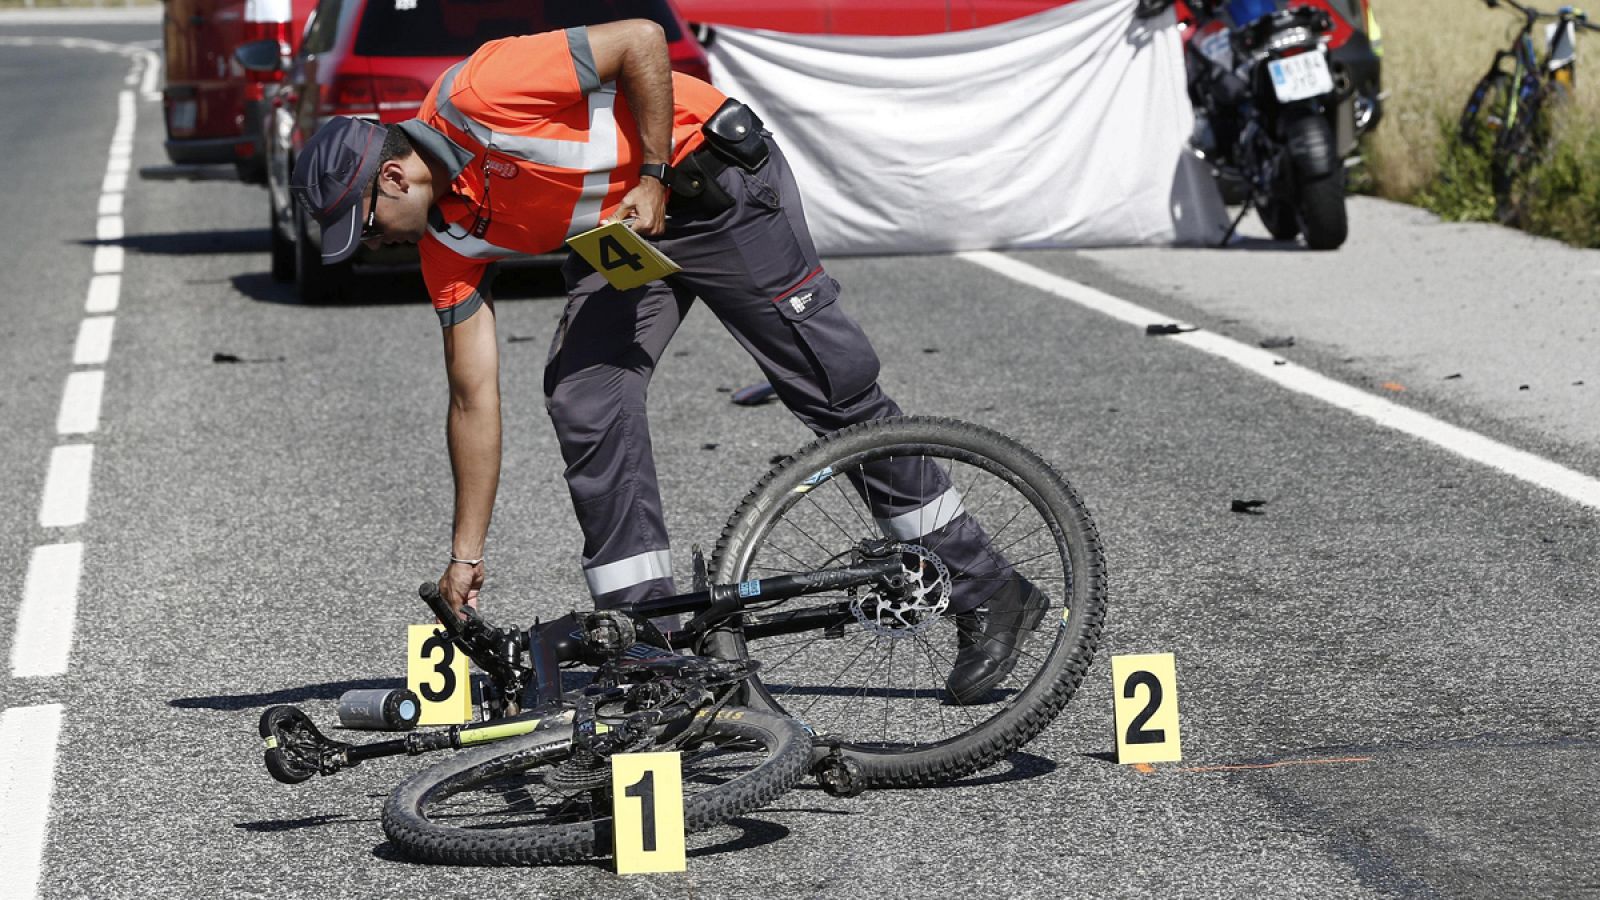 Las carreteras españolas han registrado 21 muertes de ciclistas en lo que va de año